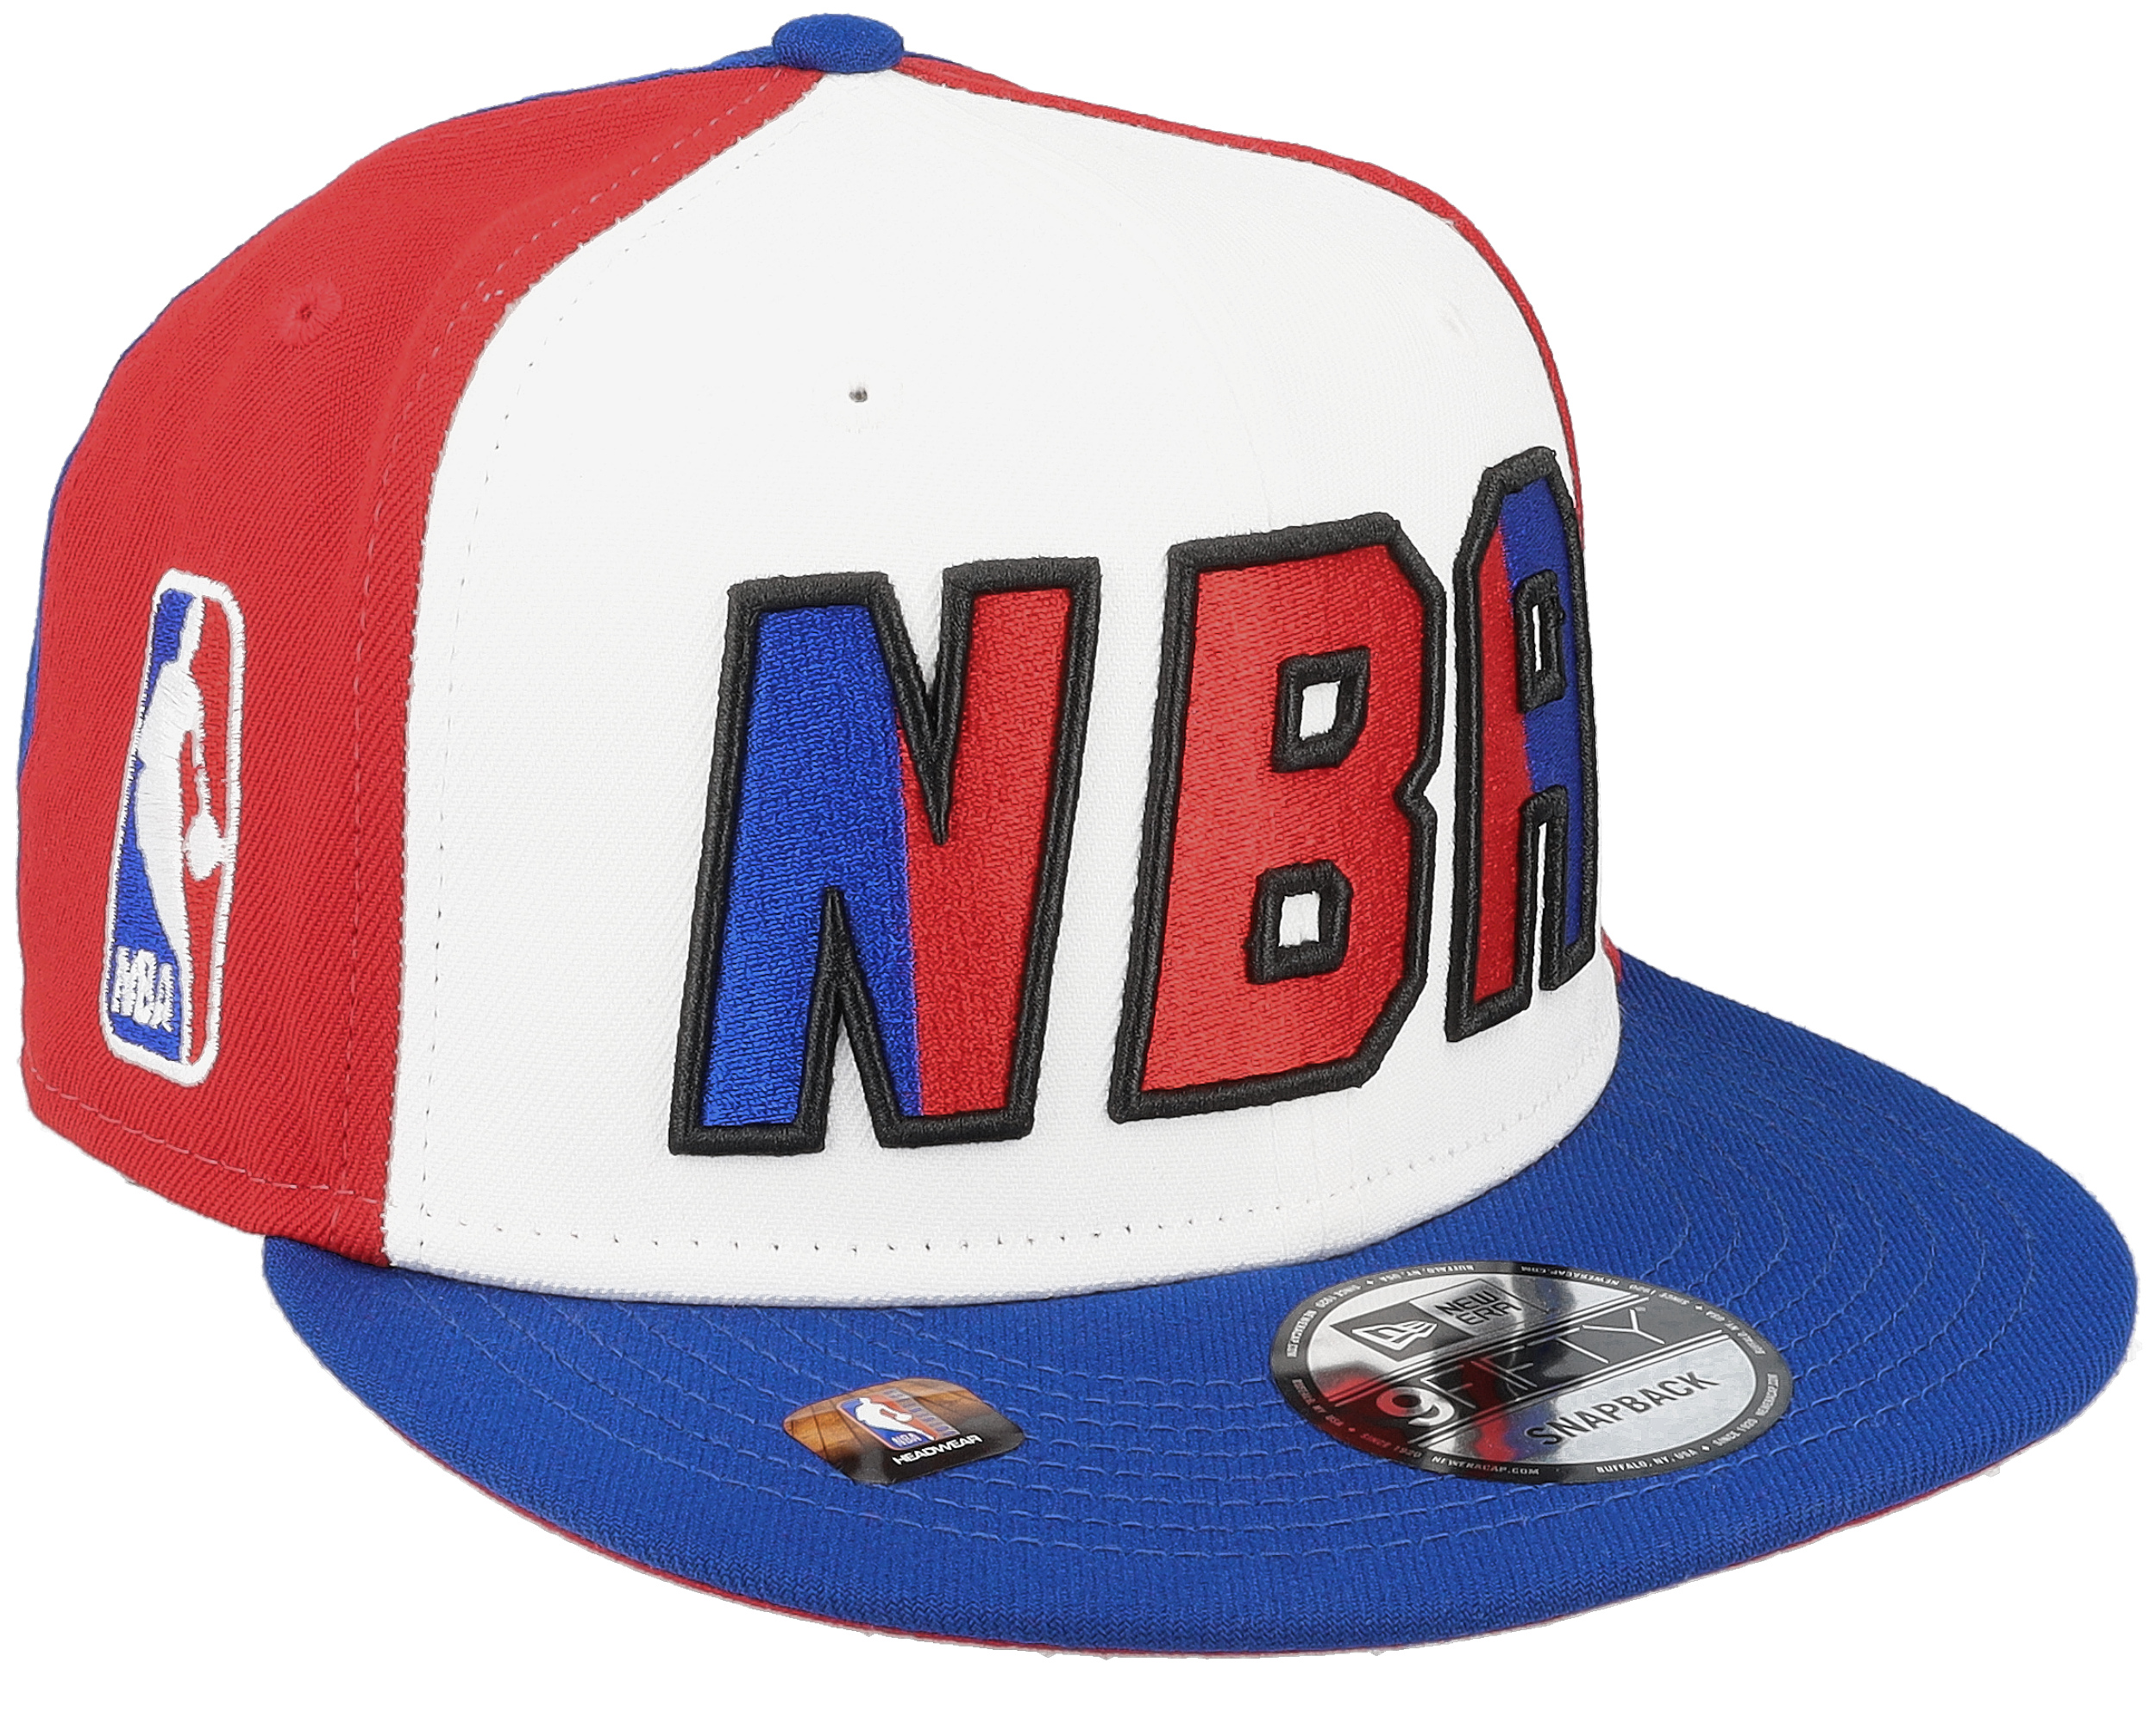 NY Knicks New Era Hat - Youth Size - SnapBack Hat - Two Toned